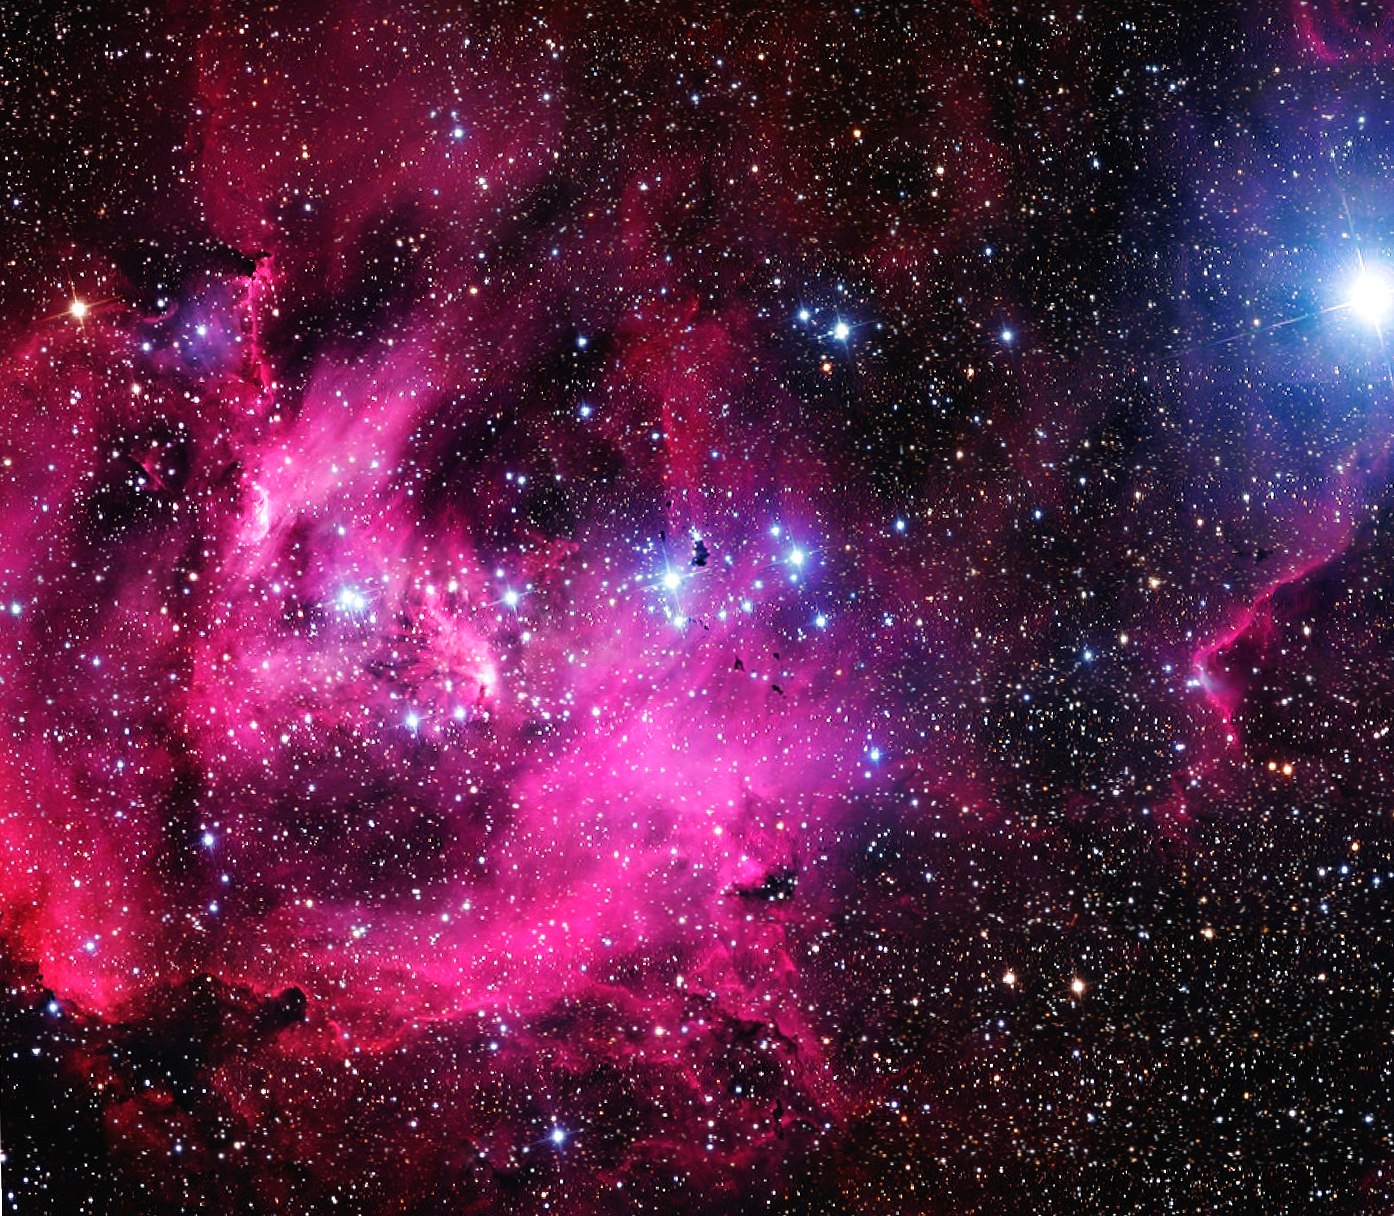 Galaxy Nebula at 1600 x 1200 size wallpapers HD quality